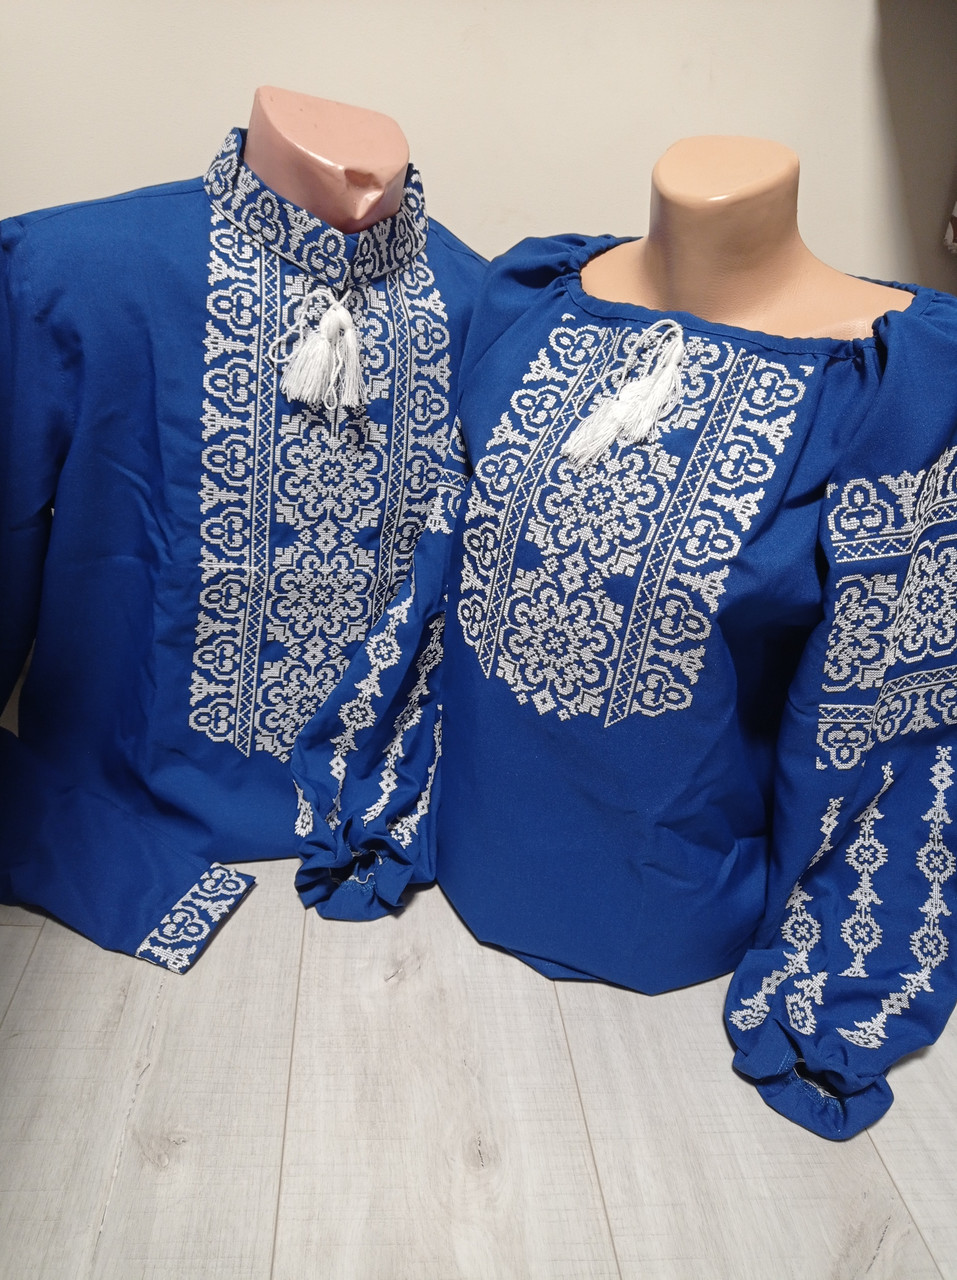 Парні сині вишиванки "Злагода" з довгим рукавом і білою вишивкою Україна УкраїнаТД комплект за 1 штуку